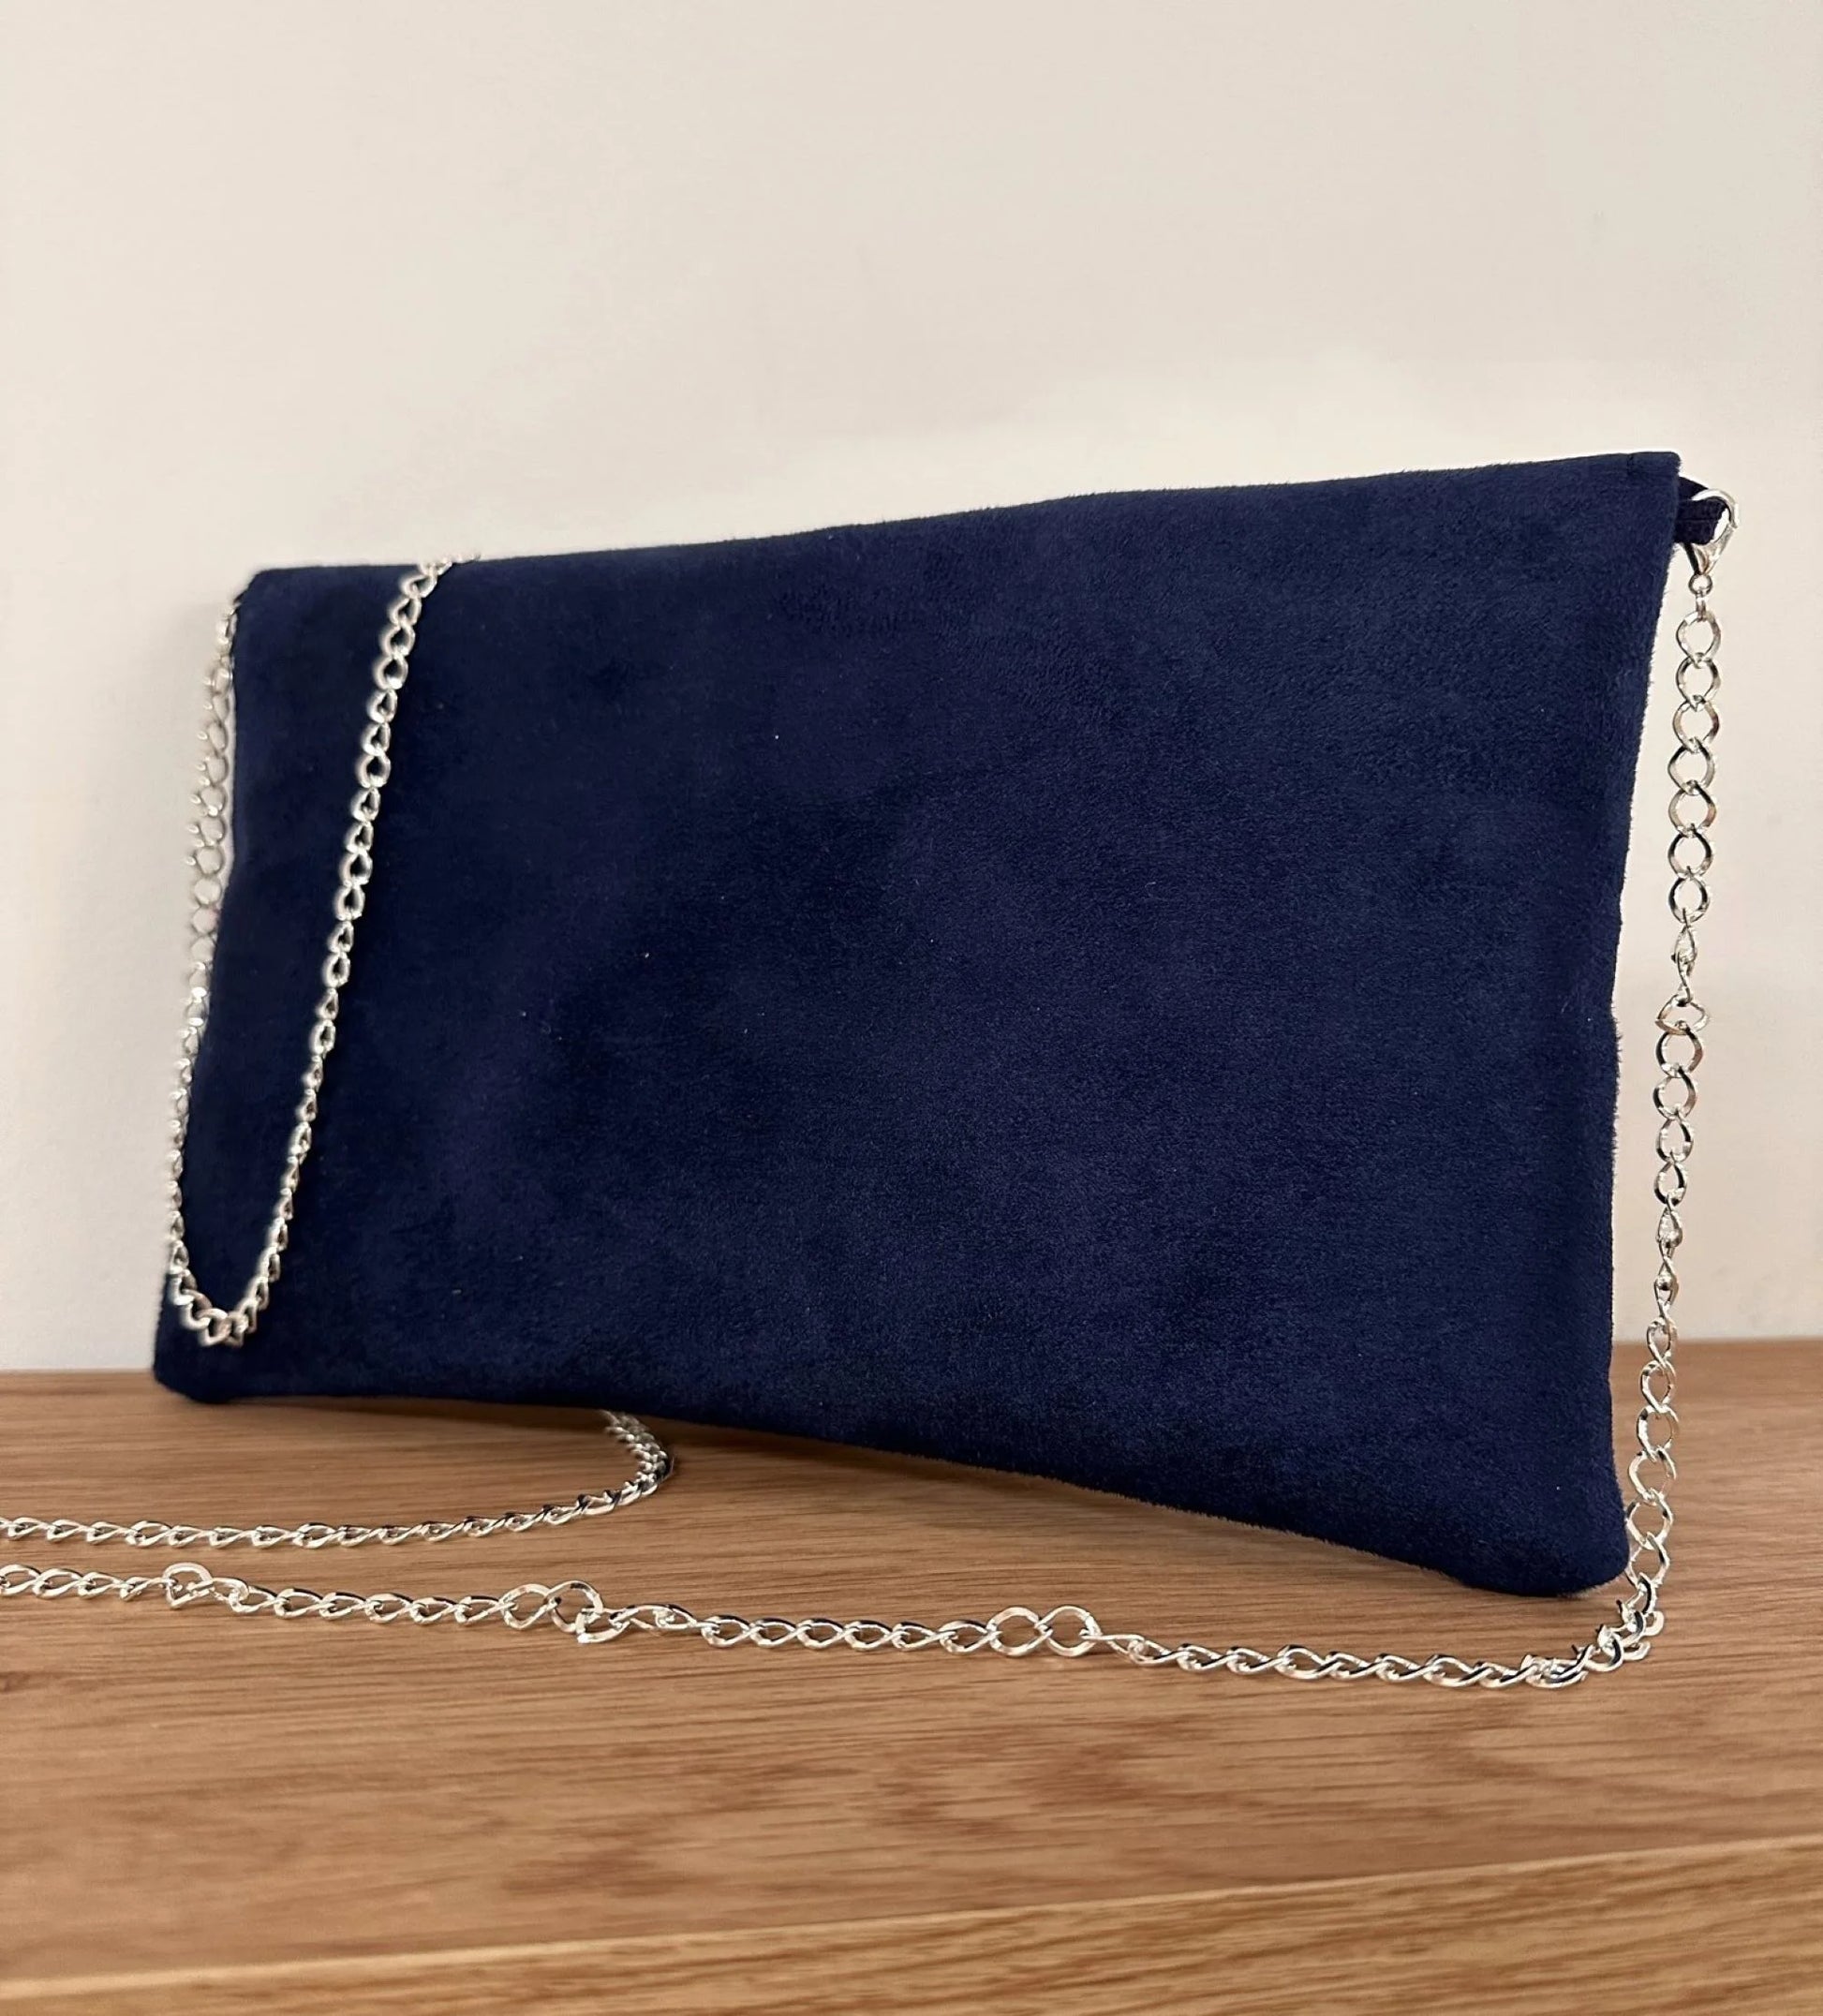 Face arrière du sac pochette Isa bleu marine et gris à paillettes argentées, avec sa chainette amovible.